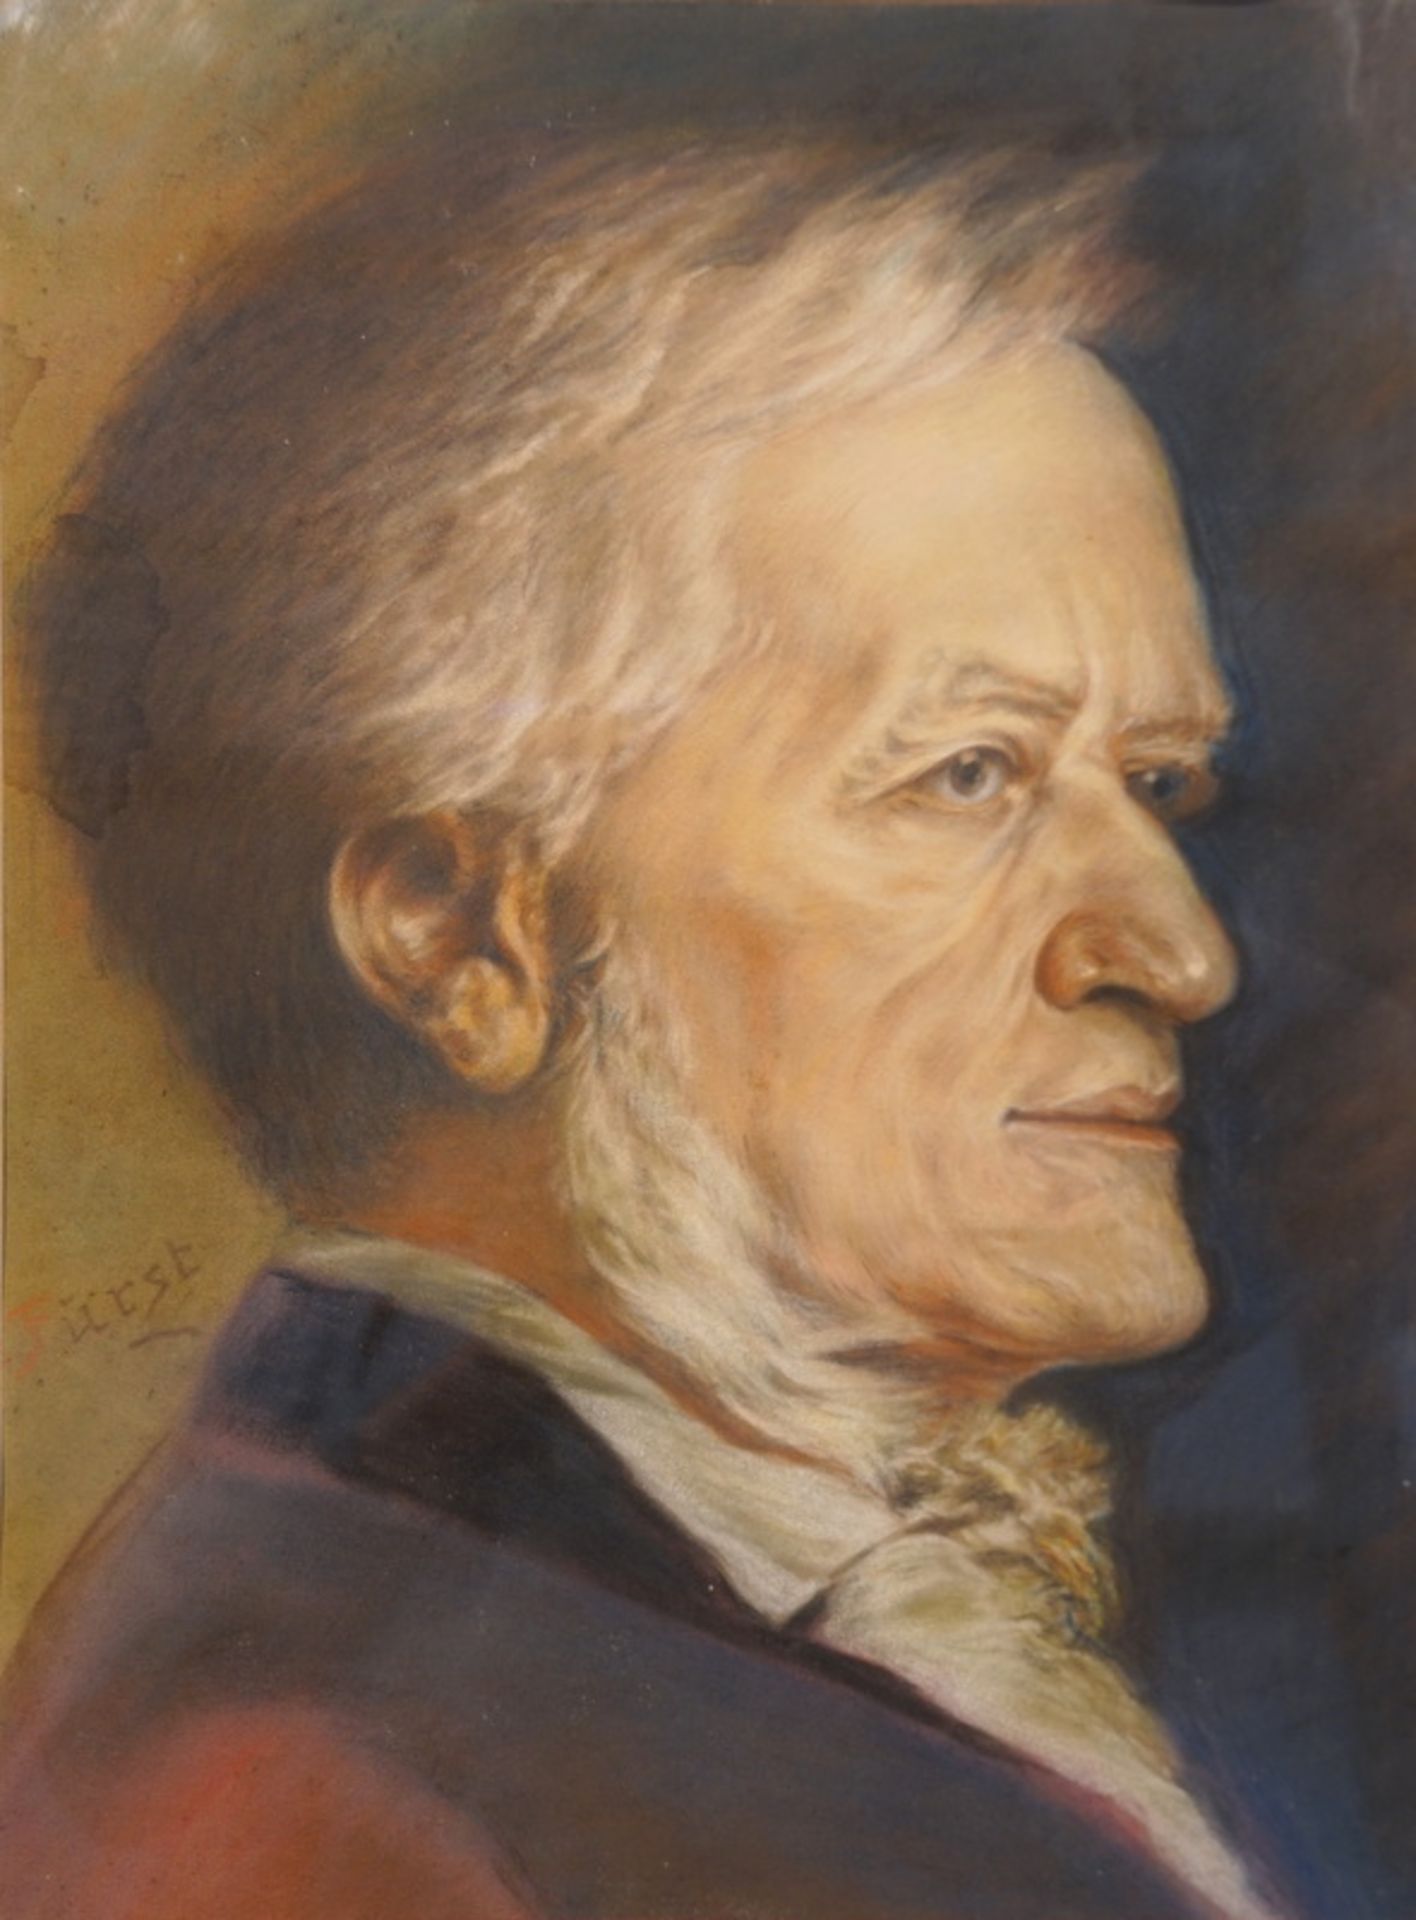 Fürst: Pastellzeichnung des Komponisten Richard Wagner